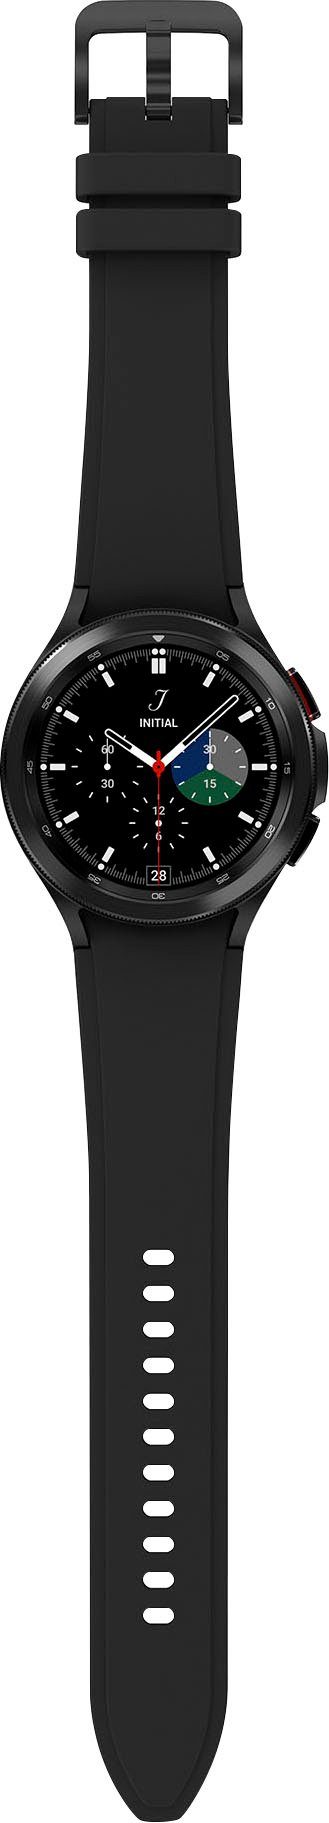 schwarz Fitness 46mm Uhr, Samsung (3,46 Google), by Tracker, Watch Galaxy LTE OS schwarz 4 Gesundheitsfunktionen | Zoll, Wear cm/1,4 Smartwatch classic Fitness